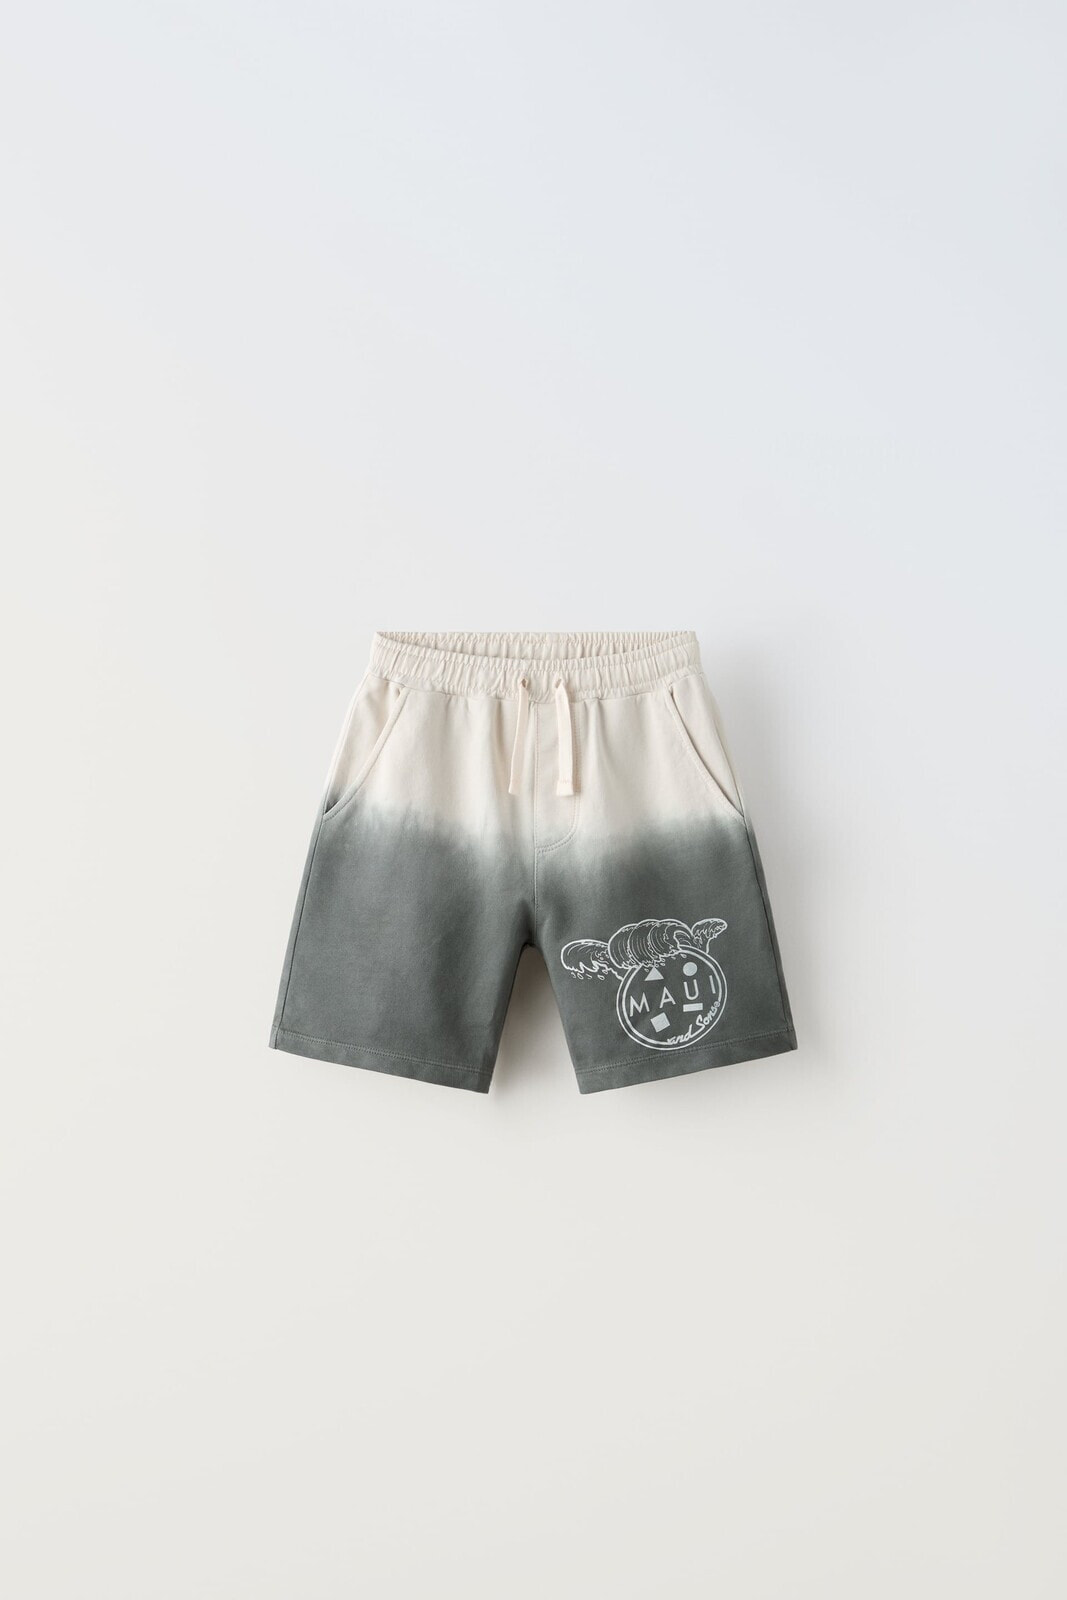 Dip-dye maui & sons ® bermuda shorts